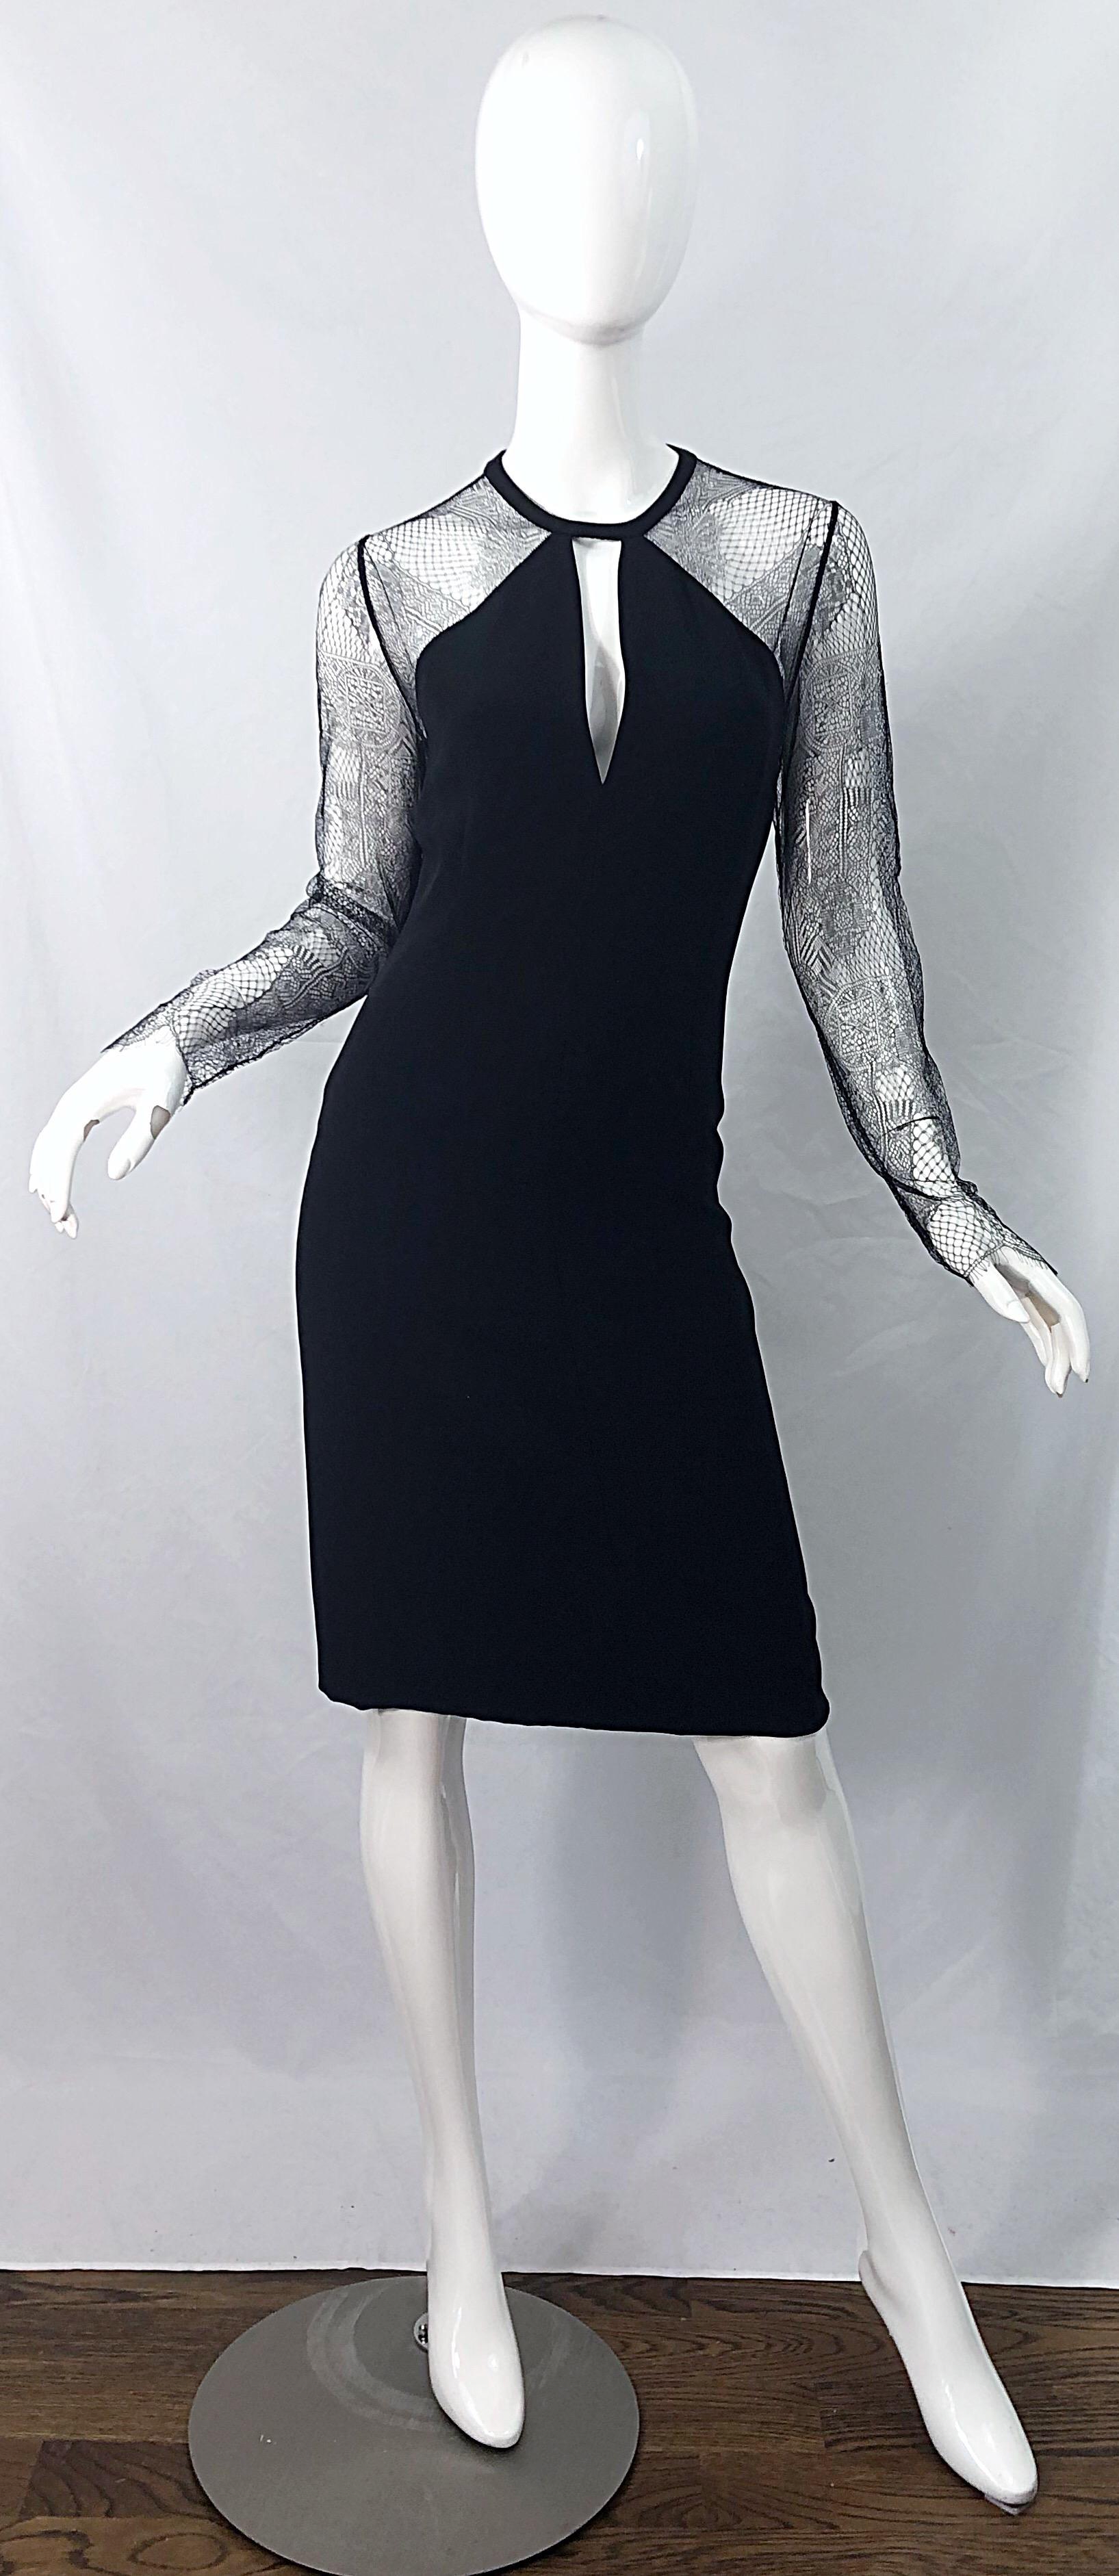 Wunderschönes und klassisches Vintage-Kleid von BILL BLASS aus schwarzer Seide und Spitze aus den frühen 1990er Jahren! Dies ist kein gewöhnliches schwarzes Kleid für jeden Tag - dieses ist etwas ganz Besonderes! Mit Ärmeln und Rücken aus schwarzer